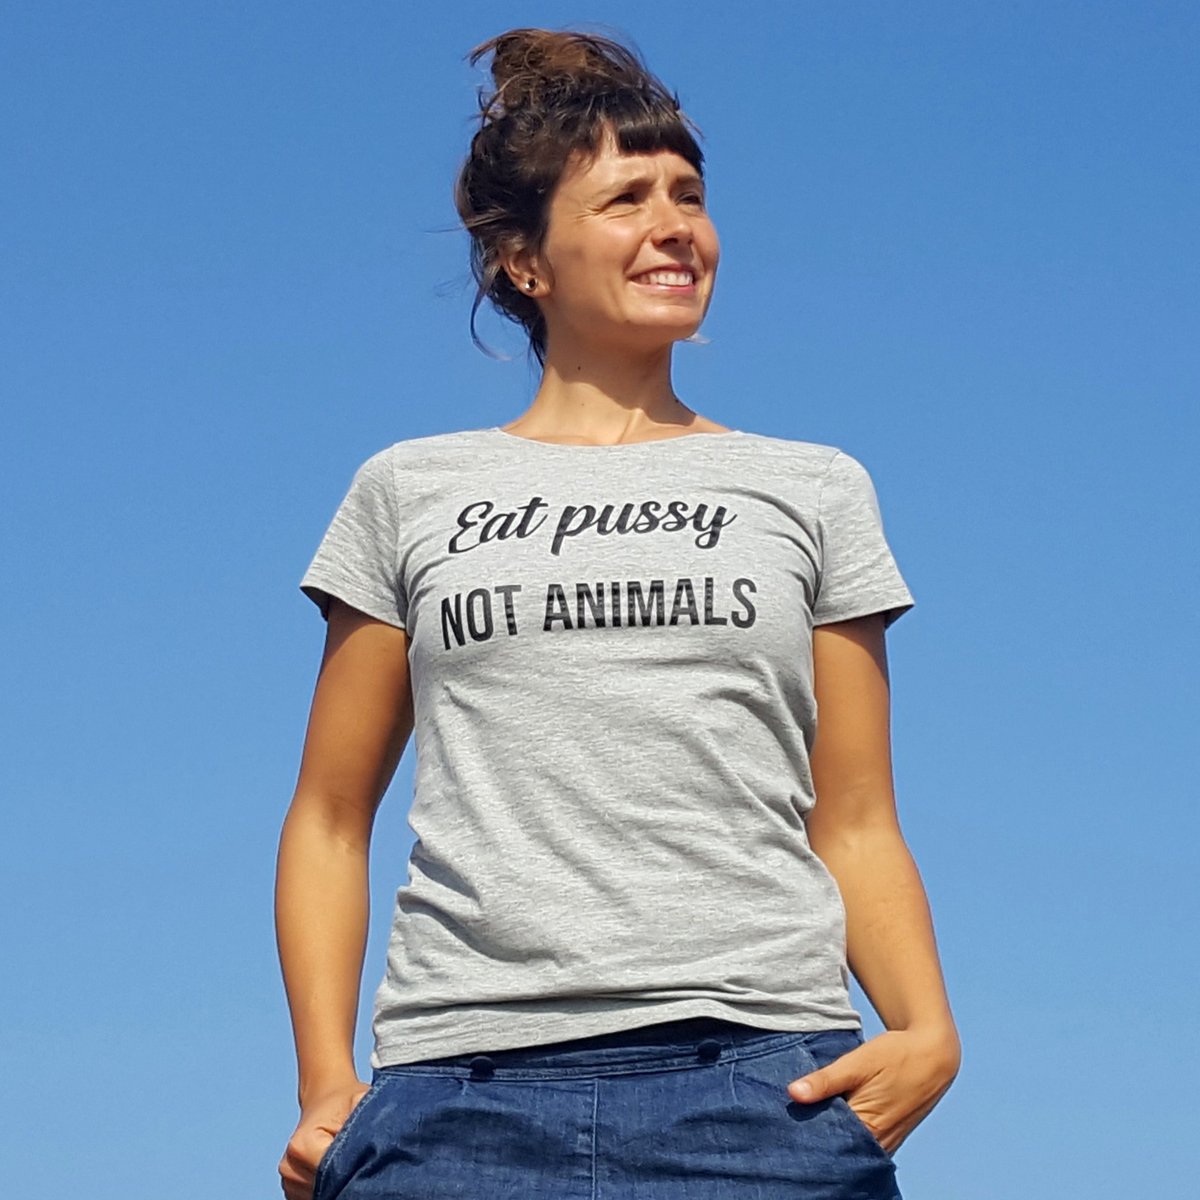 🍑Ni #patriarcado ni #especismo, disfruta la vida y deja que los animales disfruten de la suya.
El #veganismo es respeto.

Camiseta 100% #algodónorgánico

#feminismo #antiespecismo #goVegan 

👕latiendacomprometida.com/veganismo-y-an…